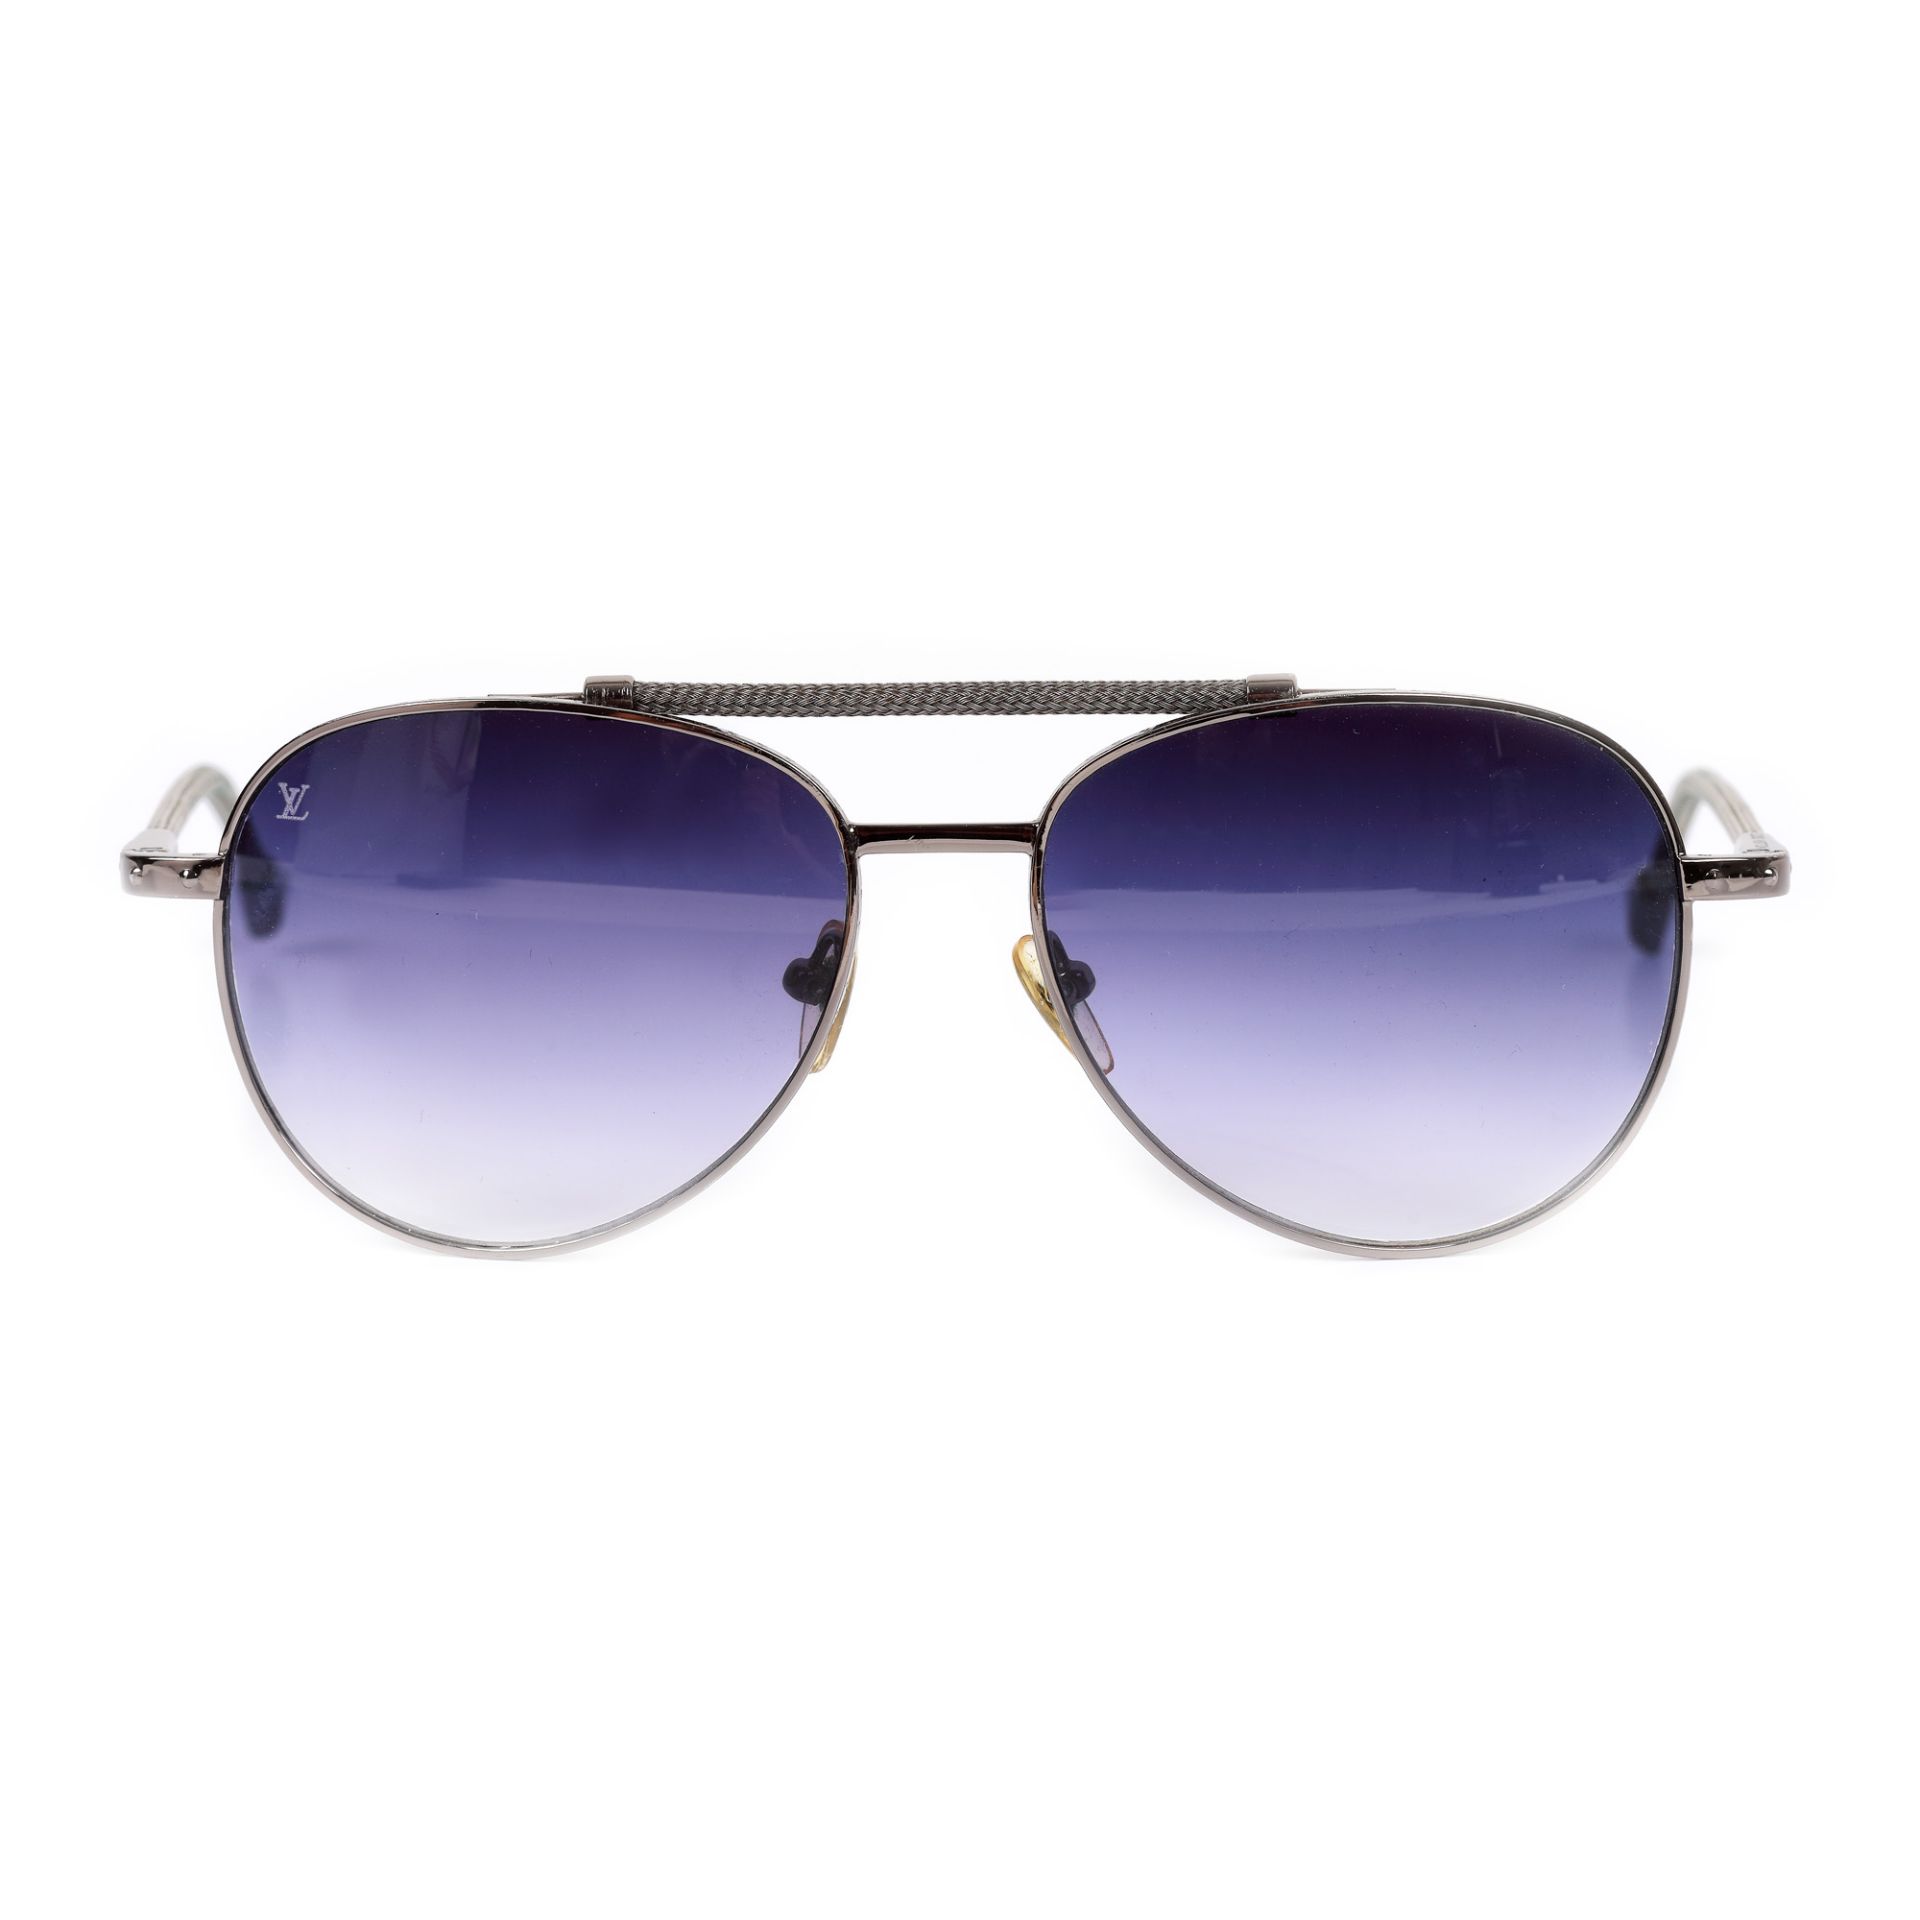 Louis Vuitton Pilot glasses, women, bag - Image 2 of 4